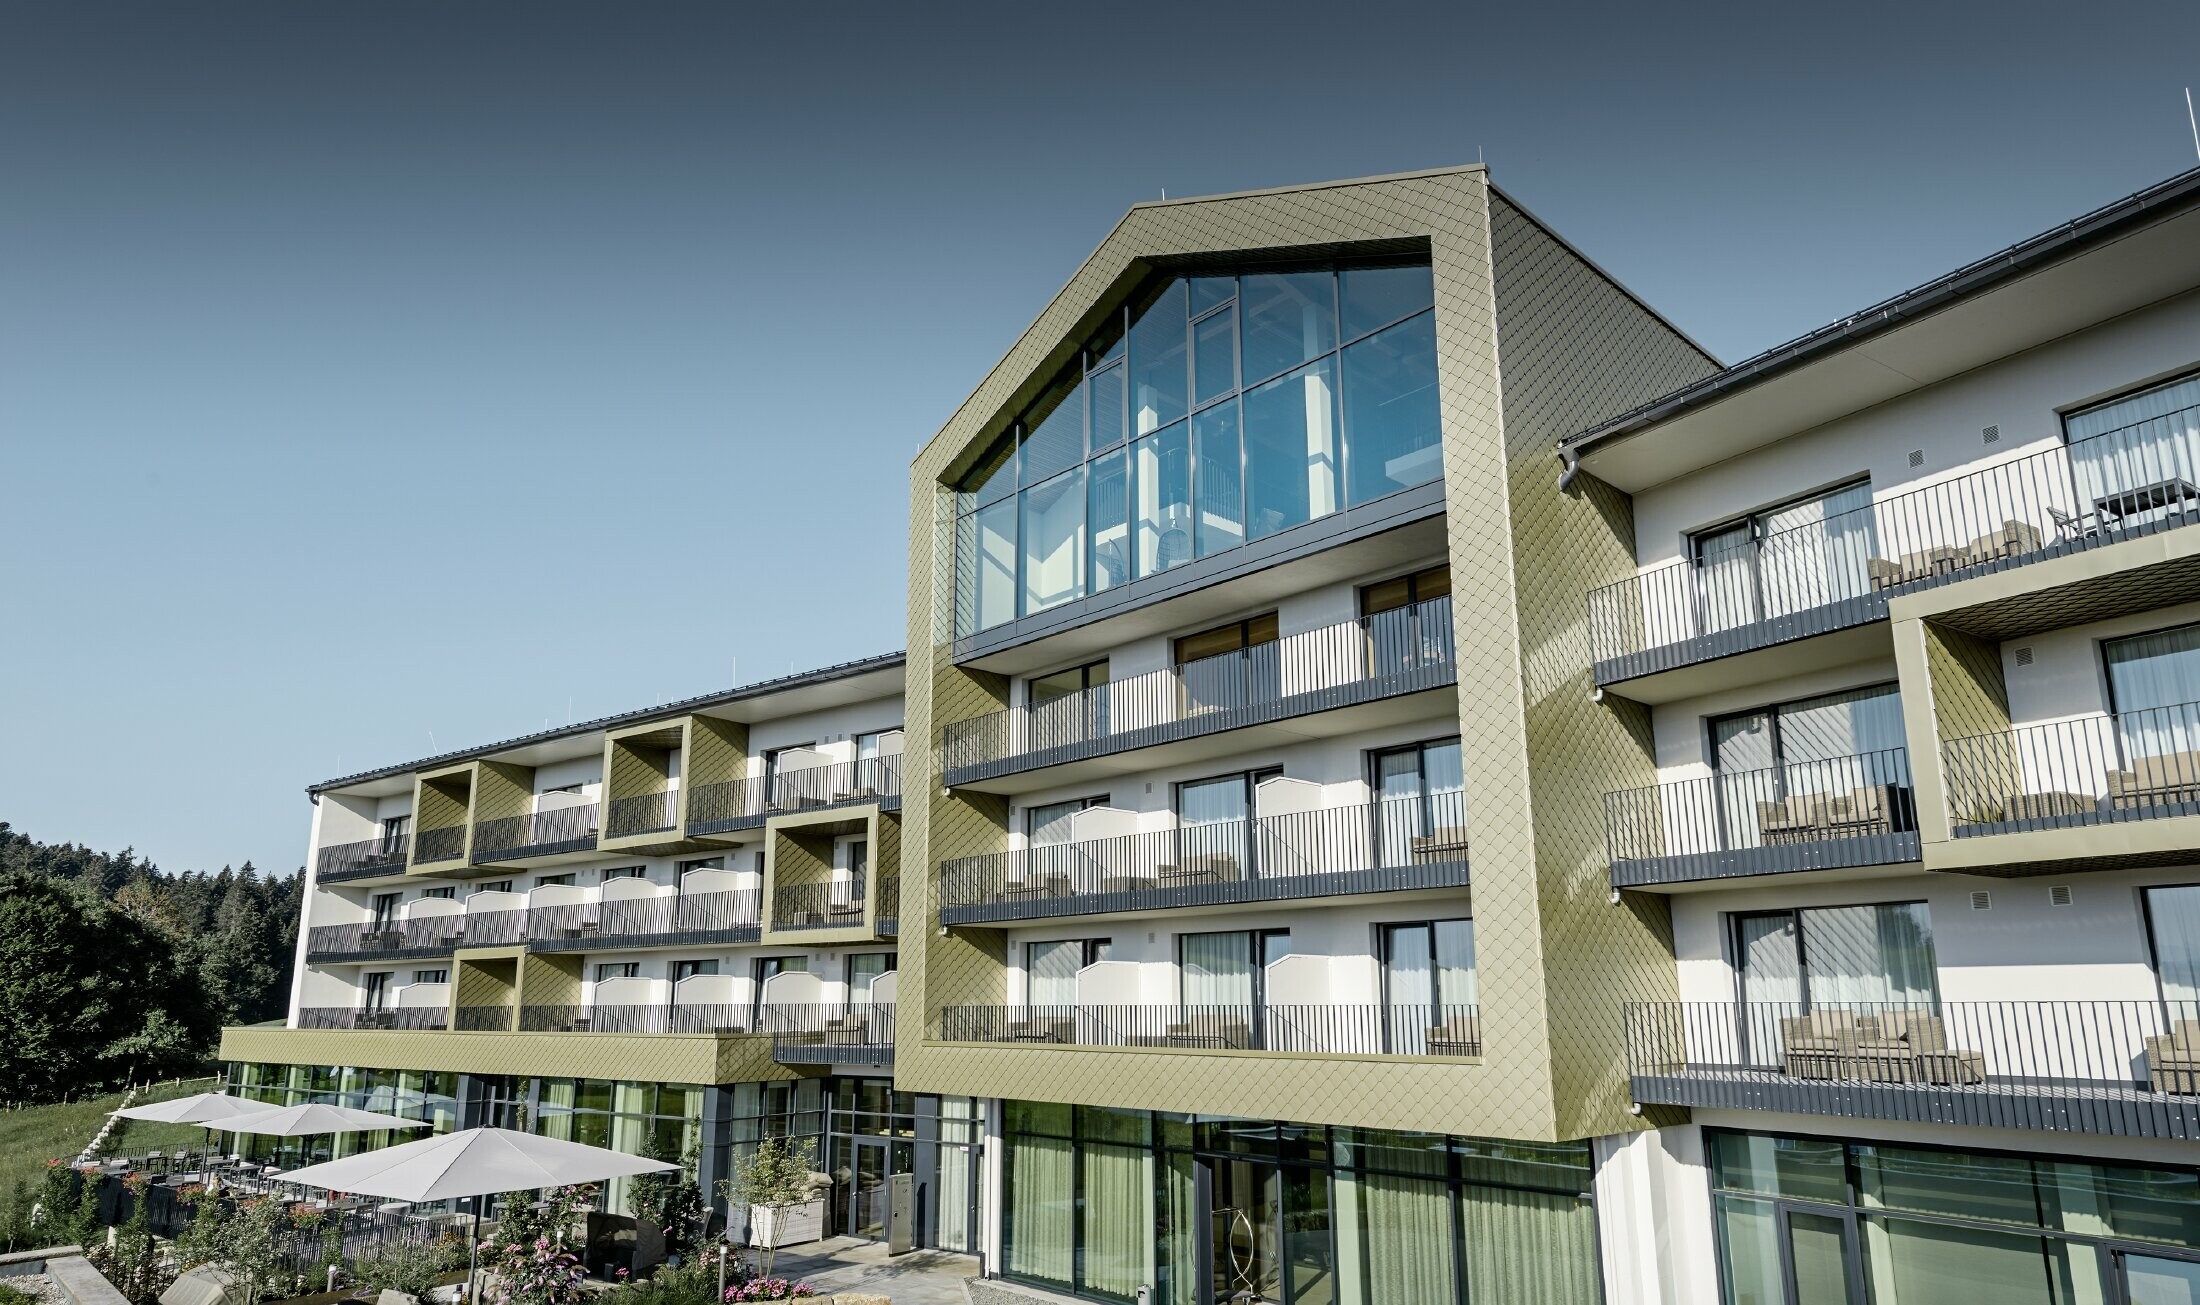 Fasaddesign av Hotel Edita i Scheidegg med aluminiumromber från PREFA i formatet 20 × 20 i specialfärgen ljus brons.